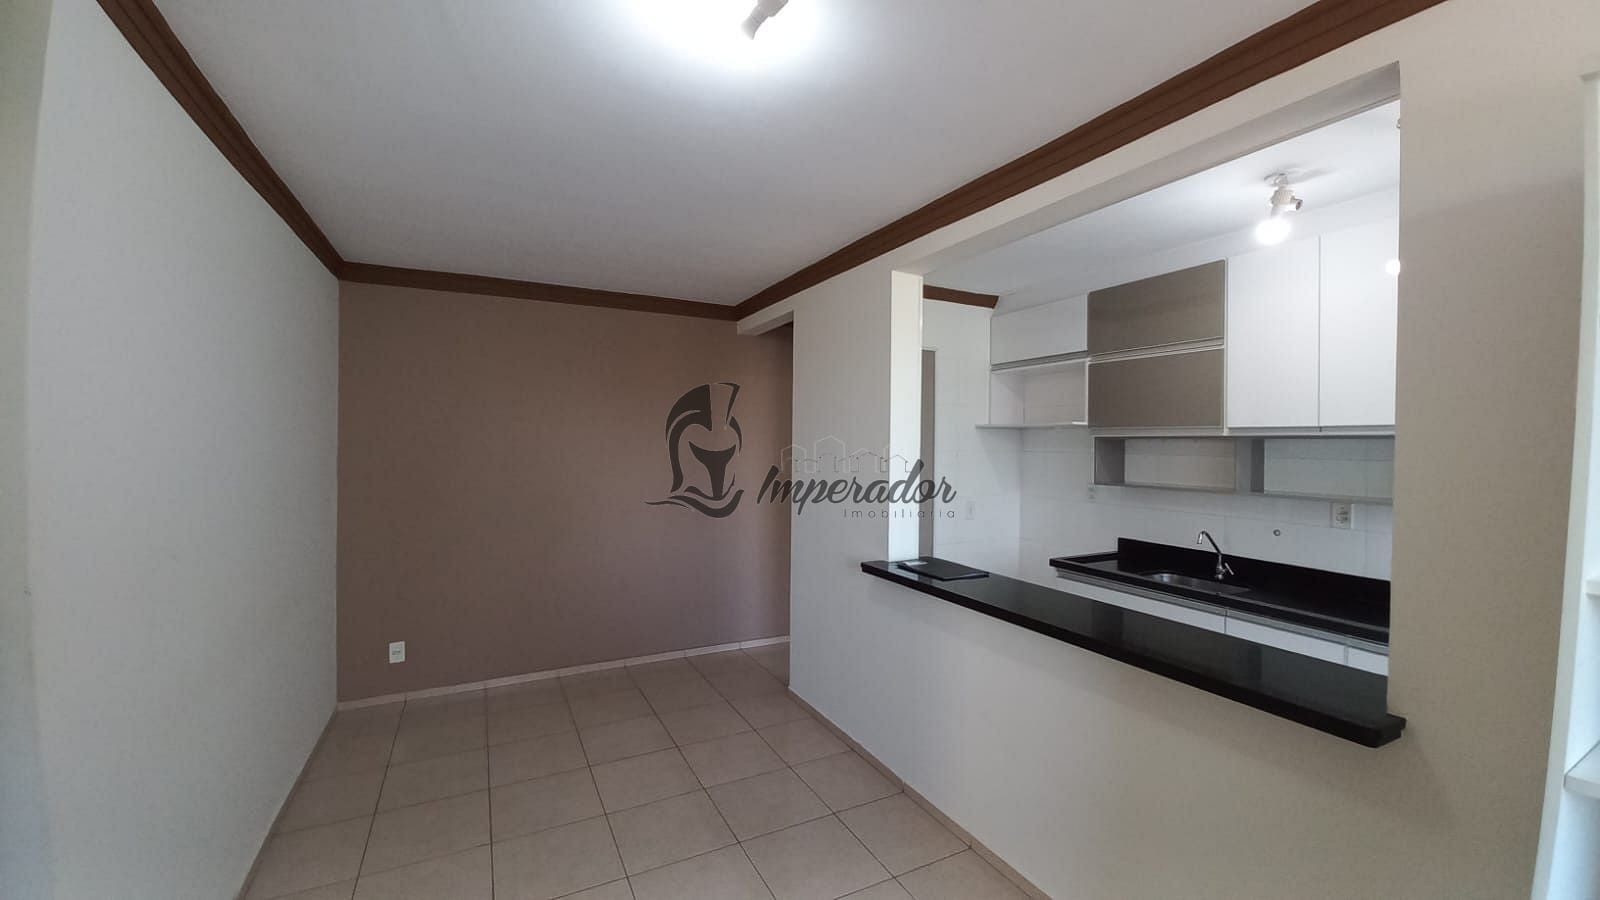 Apartamento em Vila Santa Cruz, Franca/SP de 48m² 2 quartos para locação R$ 1.000,00/mes